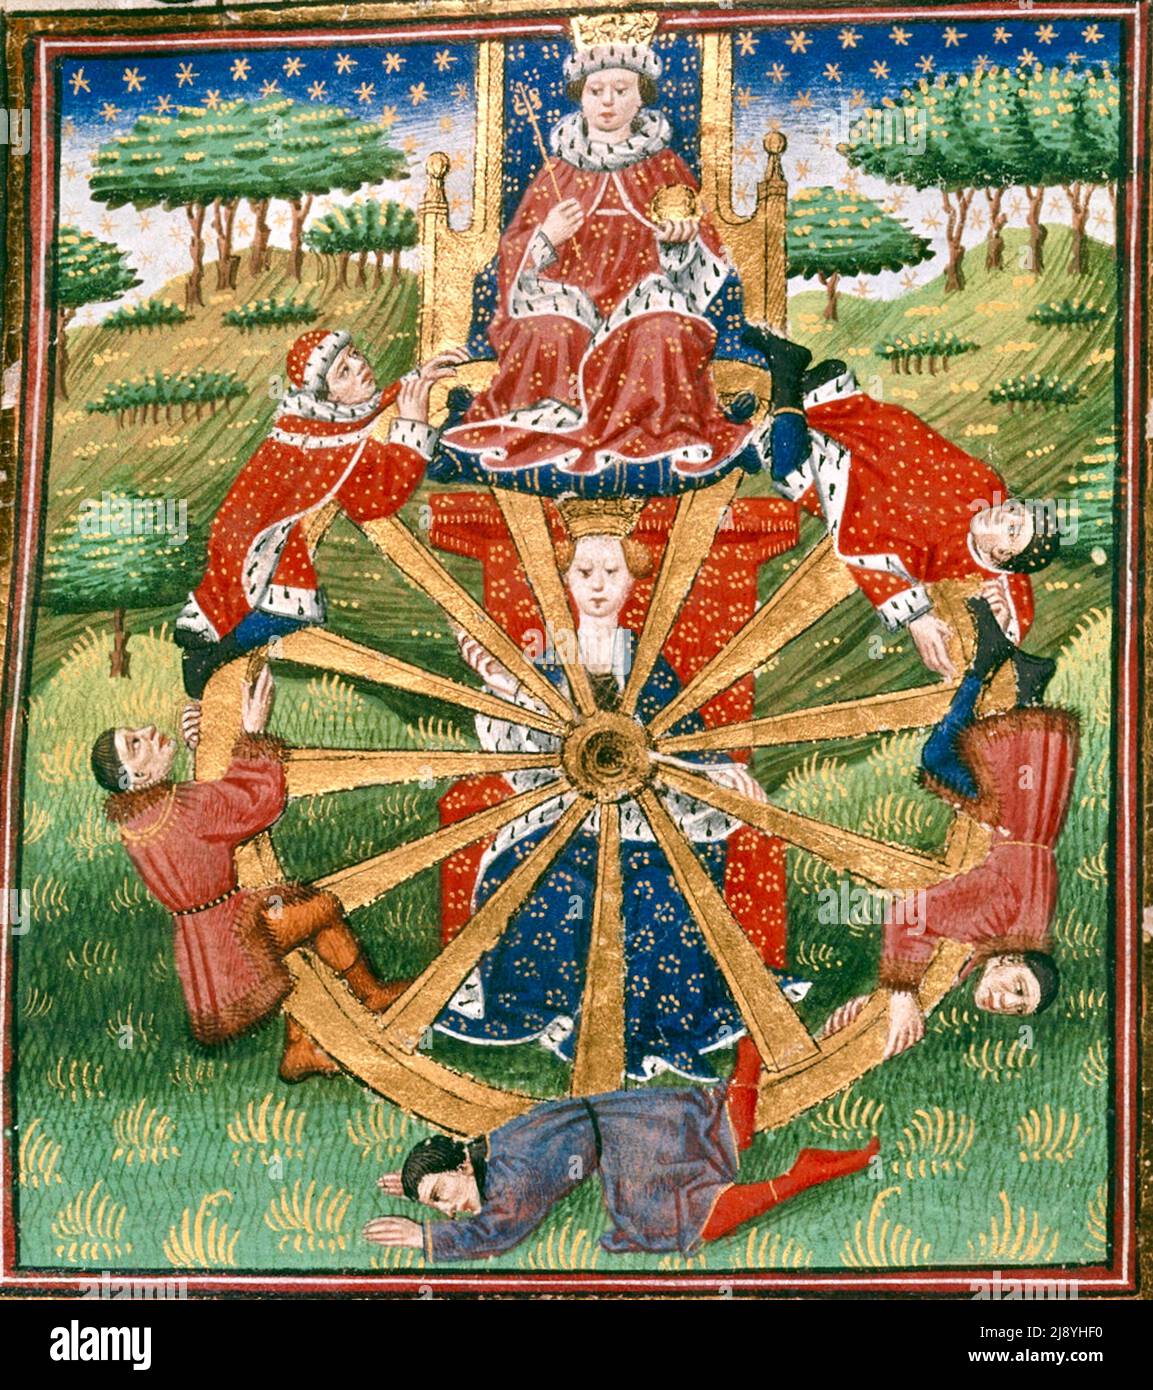 Glücksrad. Die Fortune sitzt hinter dem Rad, auf dem ein König in Enthusiasmus gezeigt wird - c1455-1462 Stockfoto